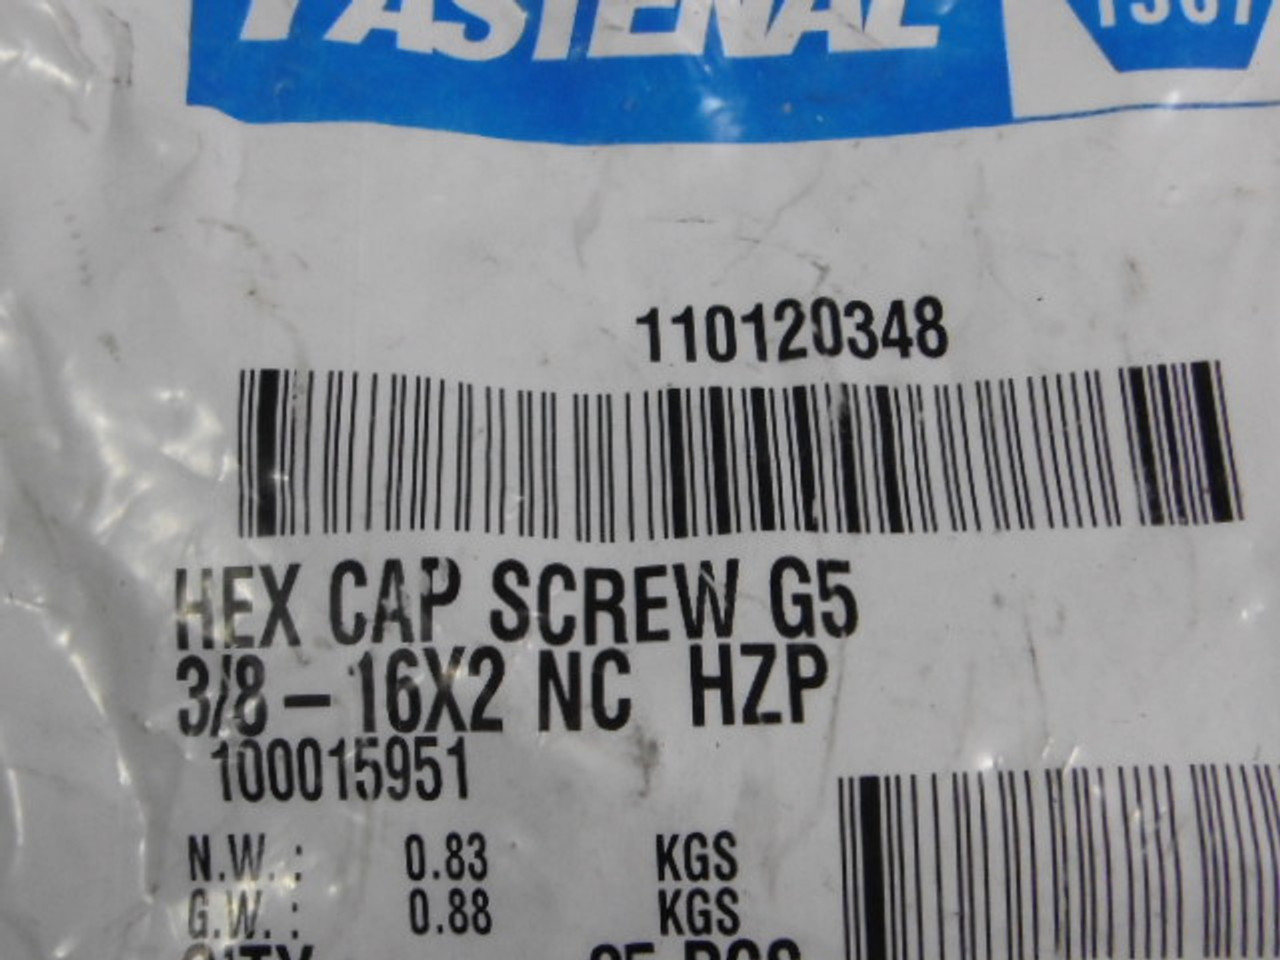 Fastenal 110120348 Hex Cap Screw 3/8"-16x2" 25-Pack  NWB